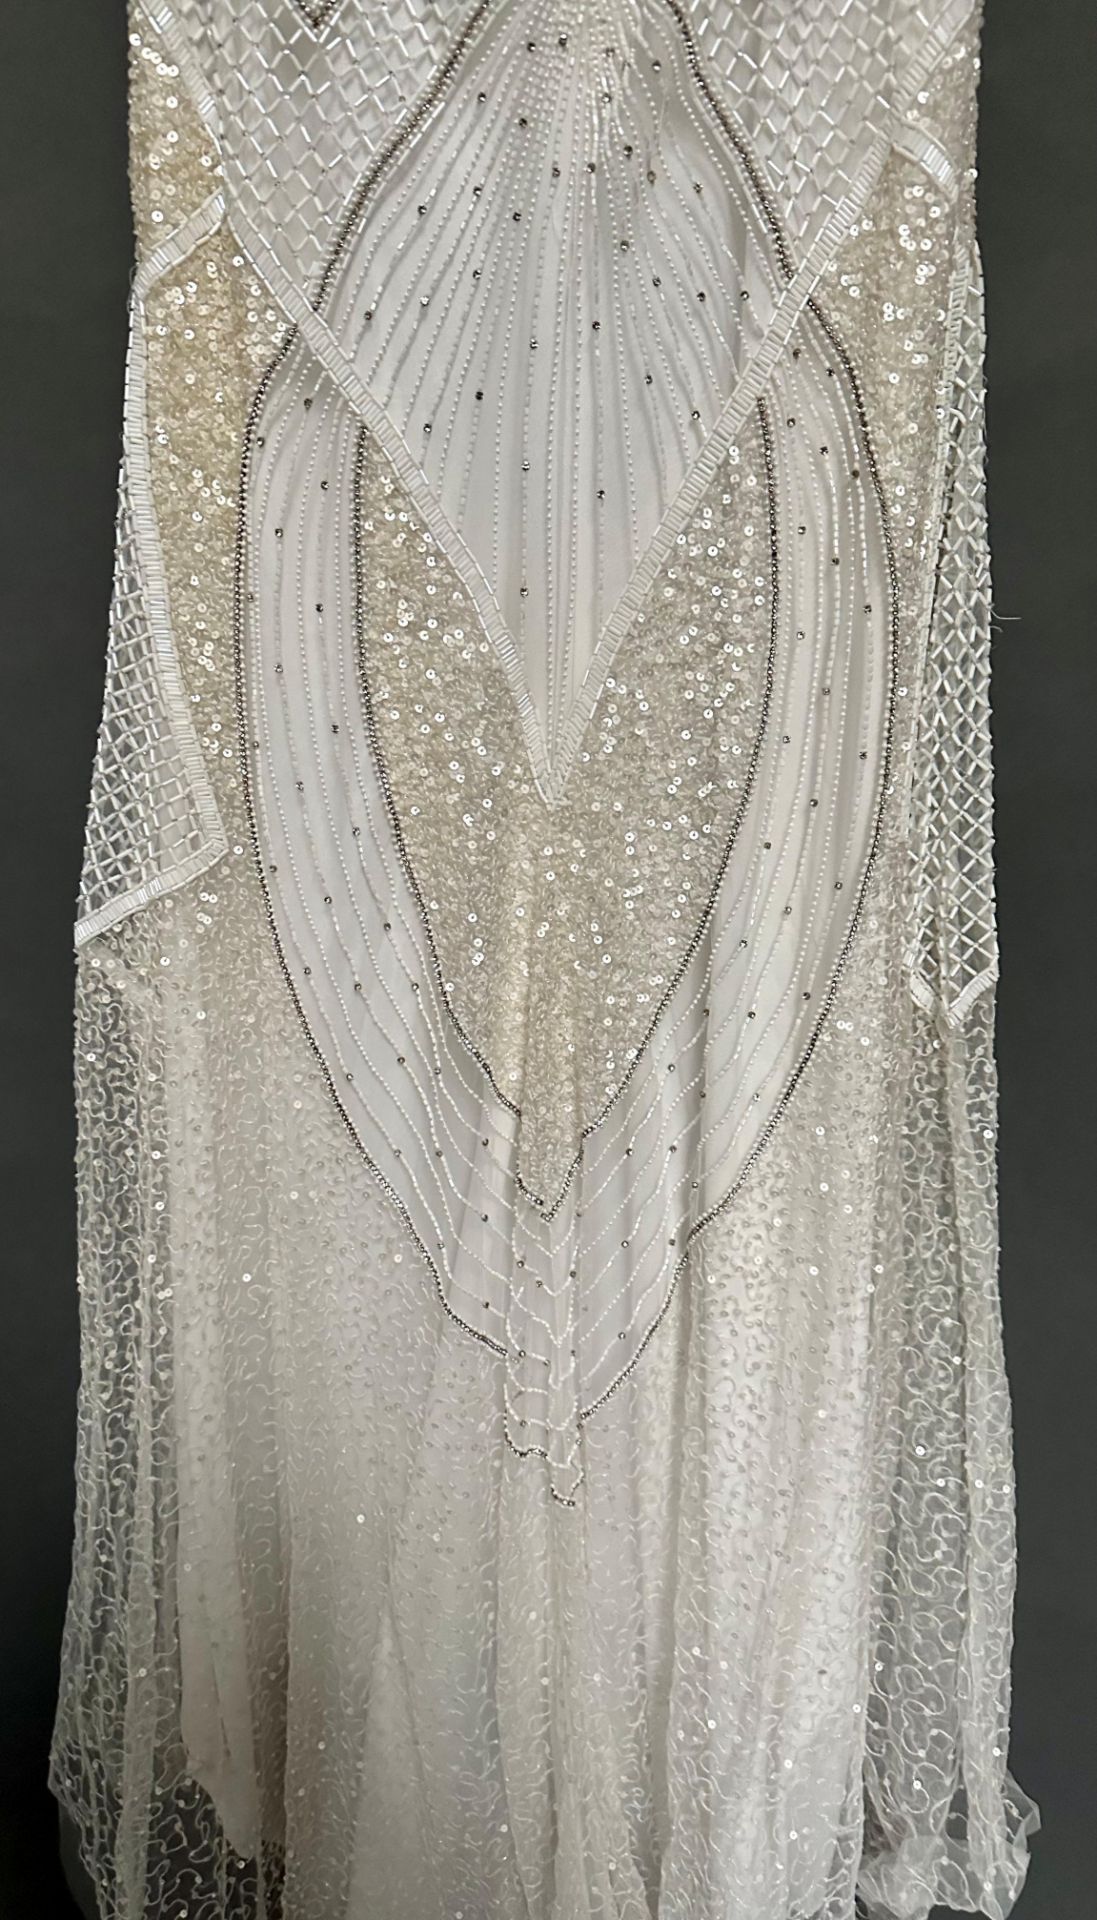 1 x ELIZA JANE HOWELL Beaded Biased Cut Fishtail Designer Wedding Dress Bridal RRP £2,650 UK12 - Image 6 of 6